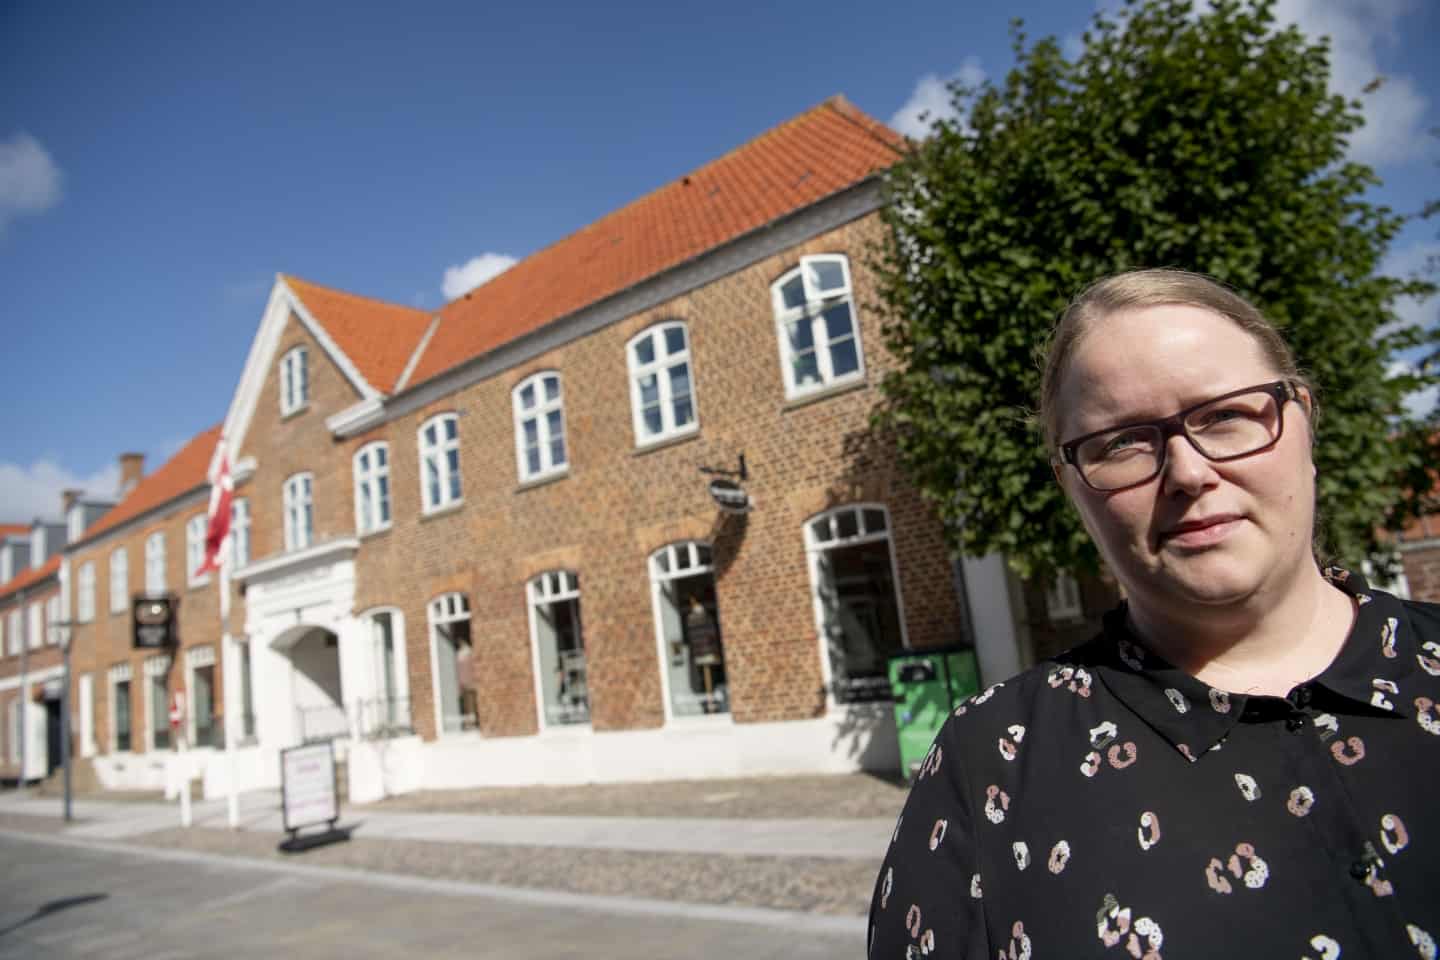 under et siden købte hun et parti billigt garn: I dag har Marianne banket ny op rekordtid | dbrs.dk